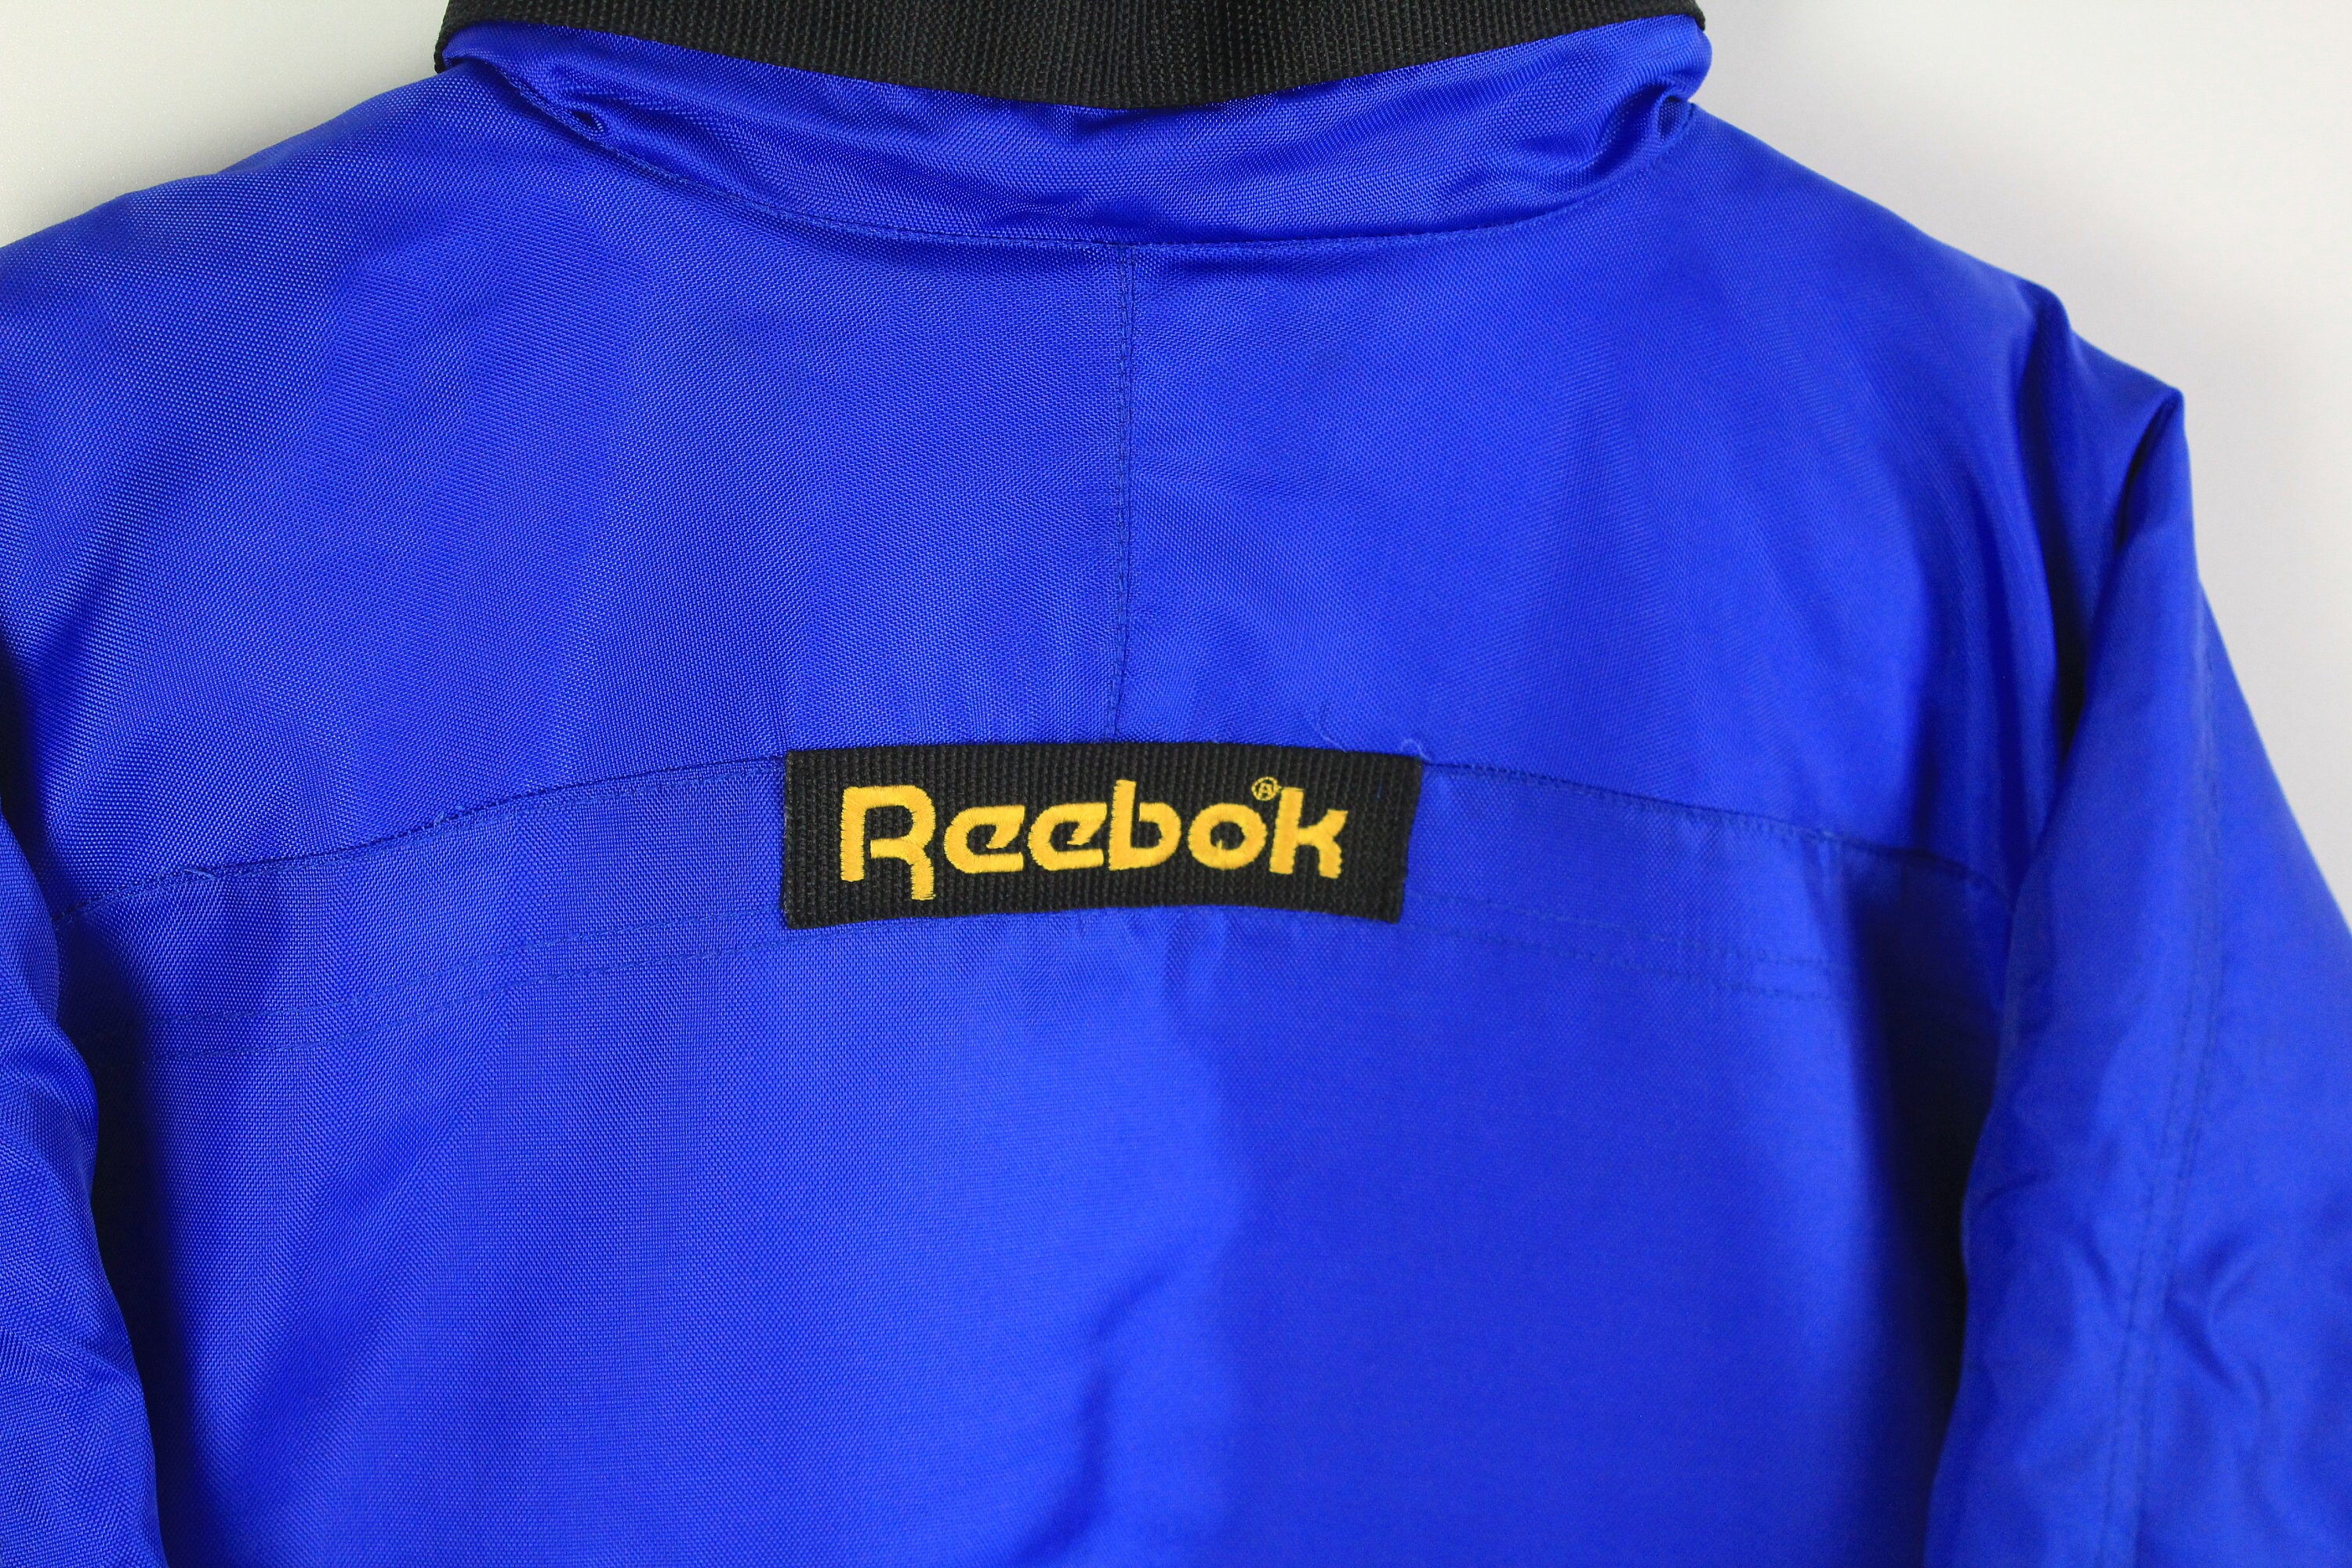 Vintage REEBOK Anorak Jacket Size XL classic blue bright | Etsy